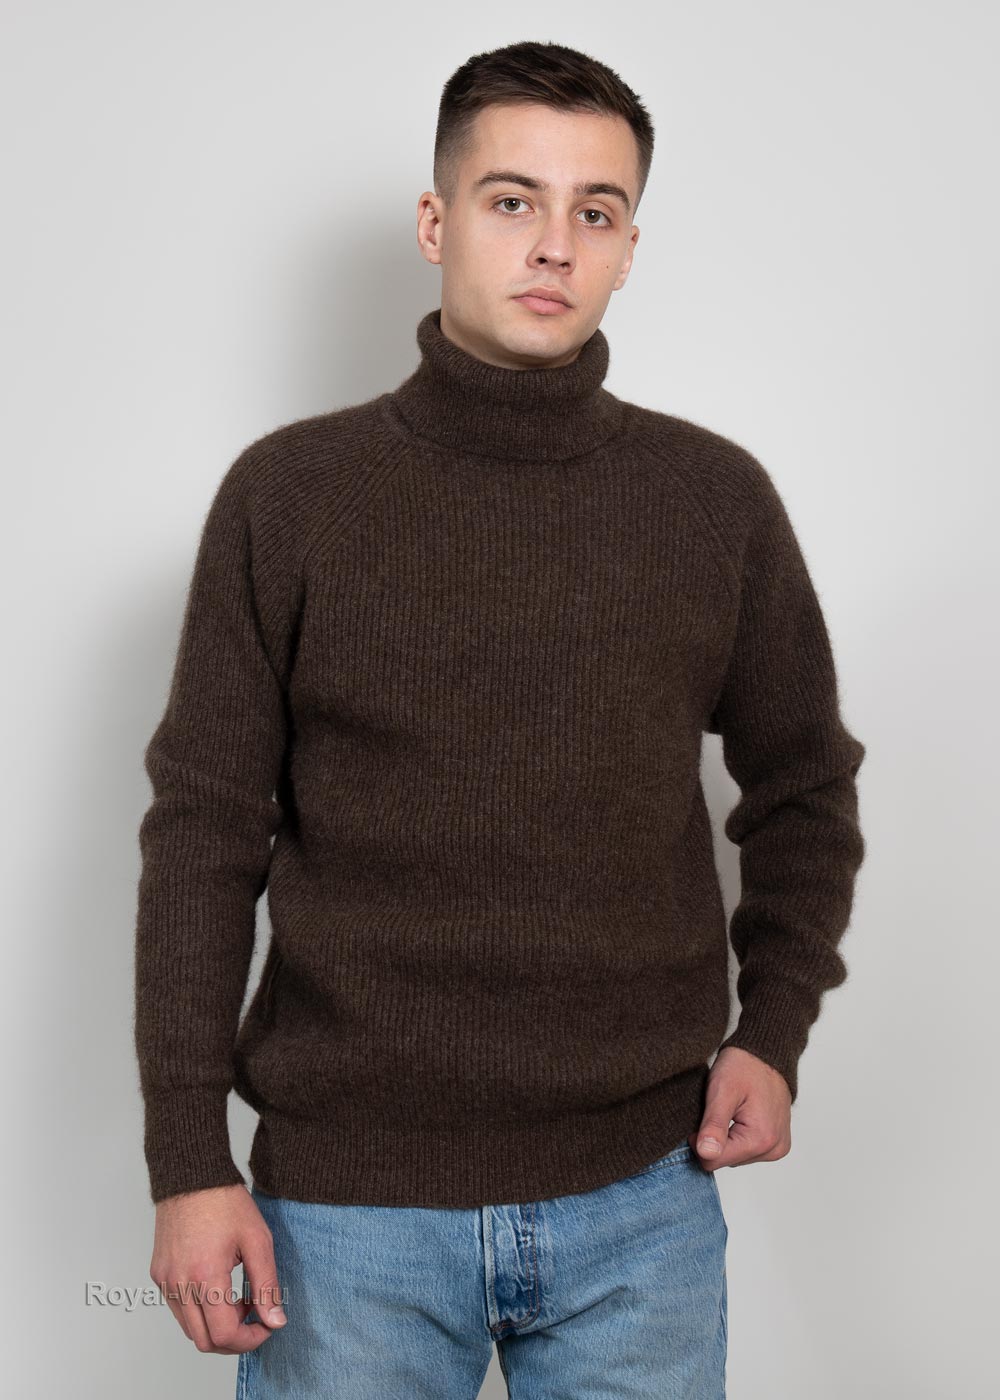 Купить мужской свитер в интернет-магазине недорого в СПб и Москве